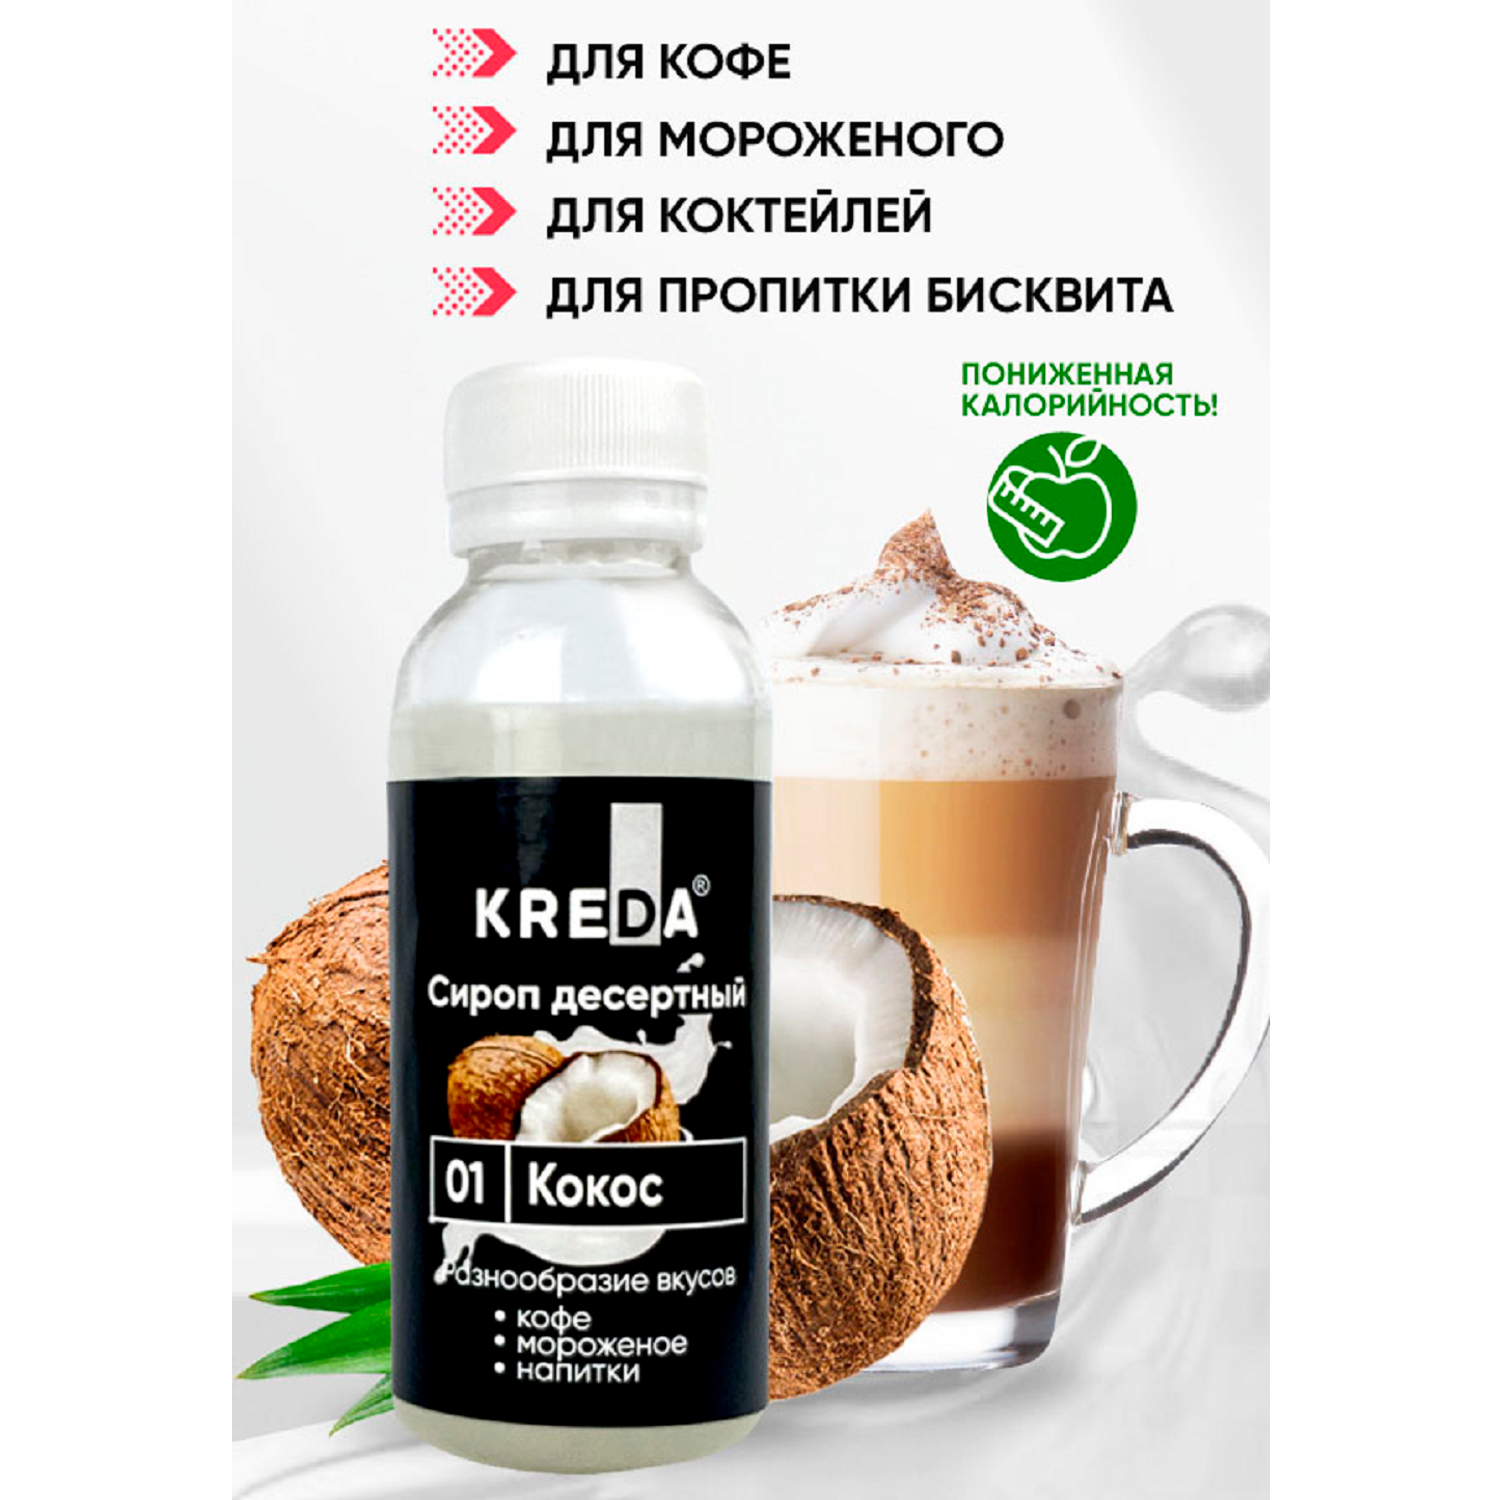 Сироп Kreda кокос для кофе мороженого и коктейлей 150мл - фото 1